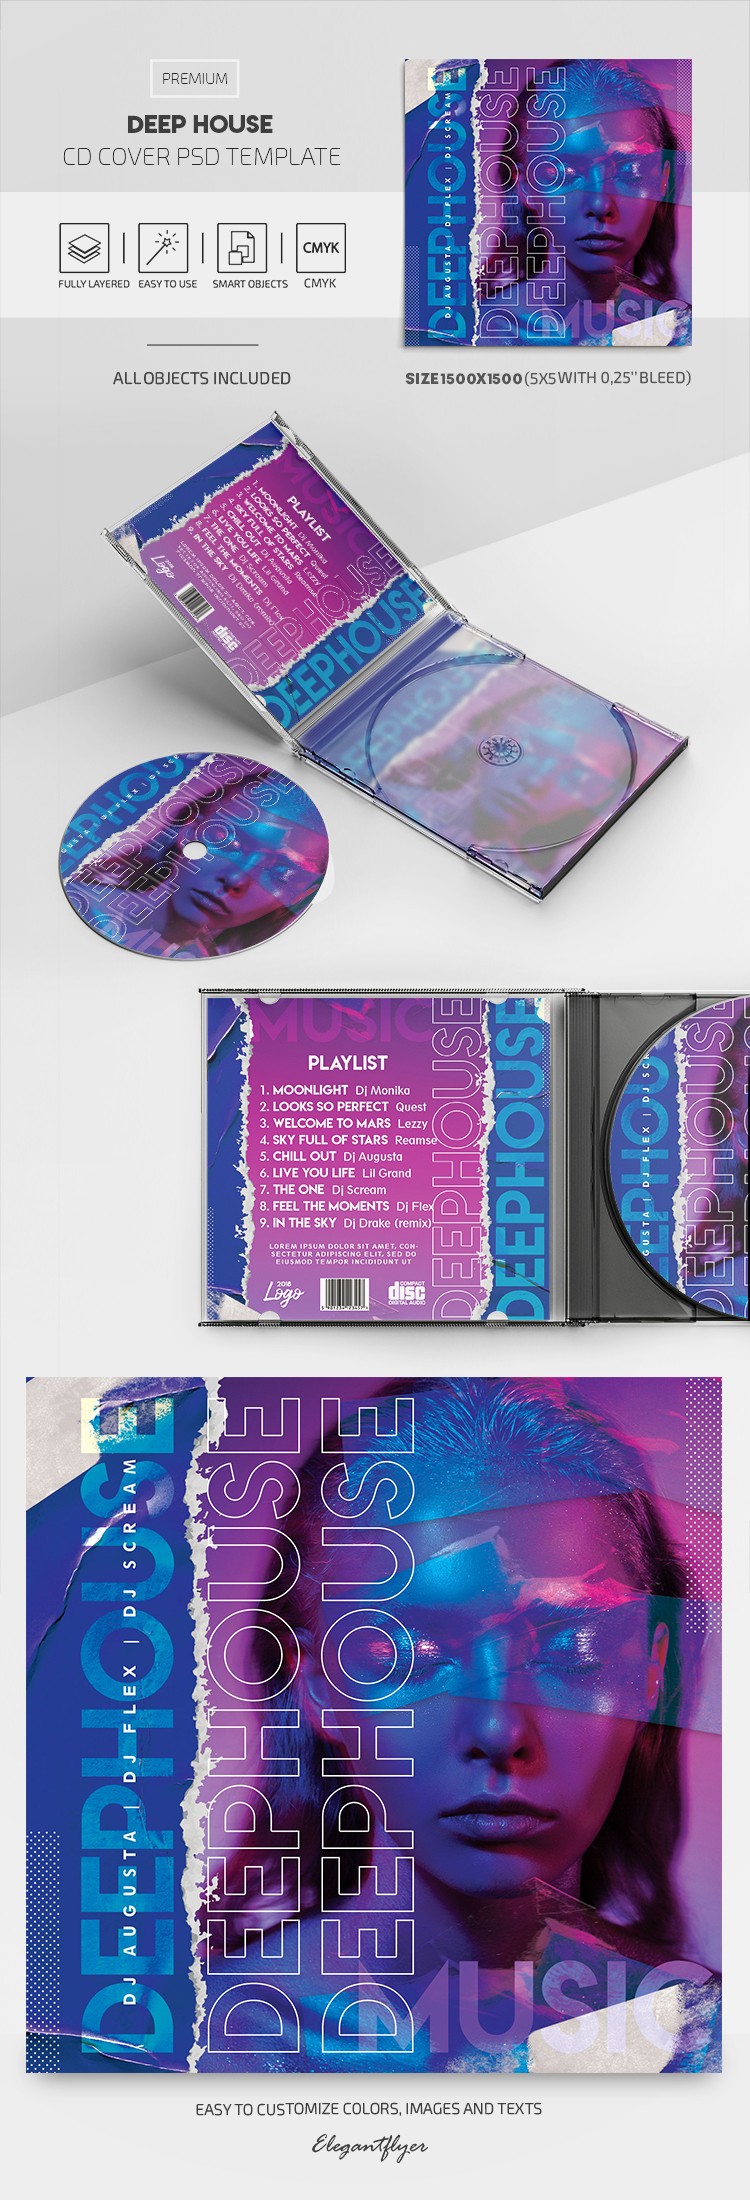 Couverture de CD de Deep House by ElegantFlyer